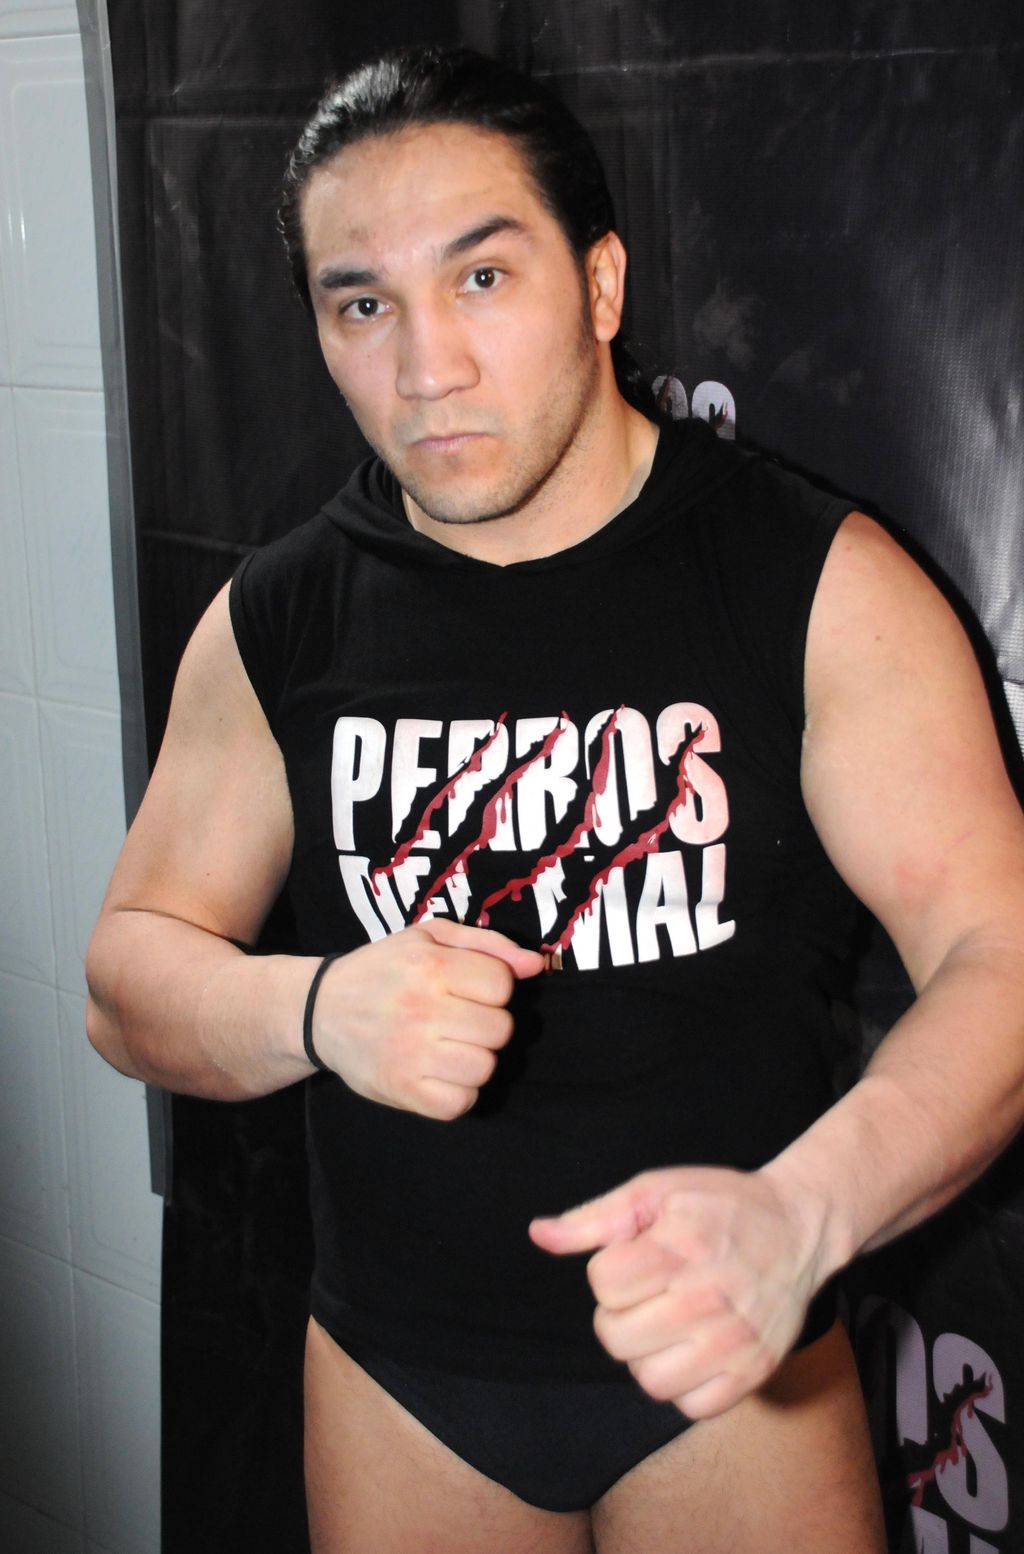 La madrugada de este sábado falleció el luchador Pedro Aguayo Ramírez, mejor conocido como 'El Hijo del Perro Aguayo', a causa de un traumatismo cervical derivado de una patada. El primero de la Dinastía